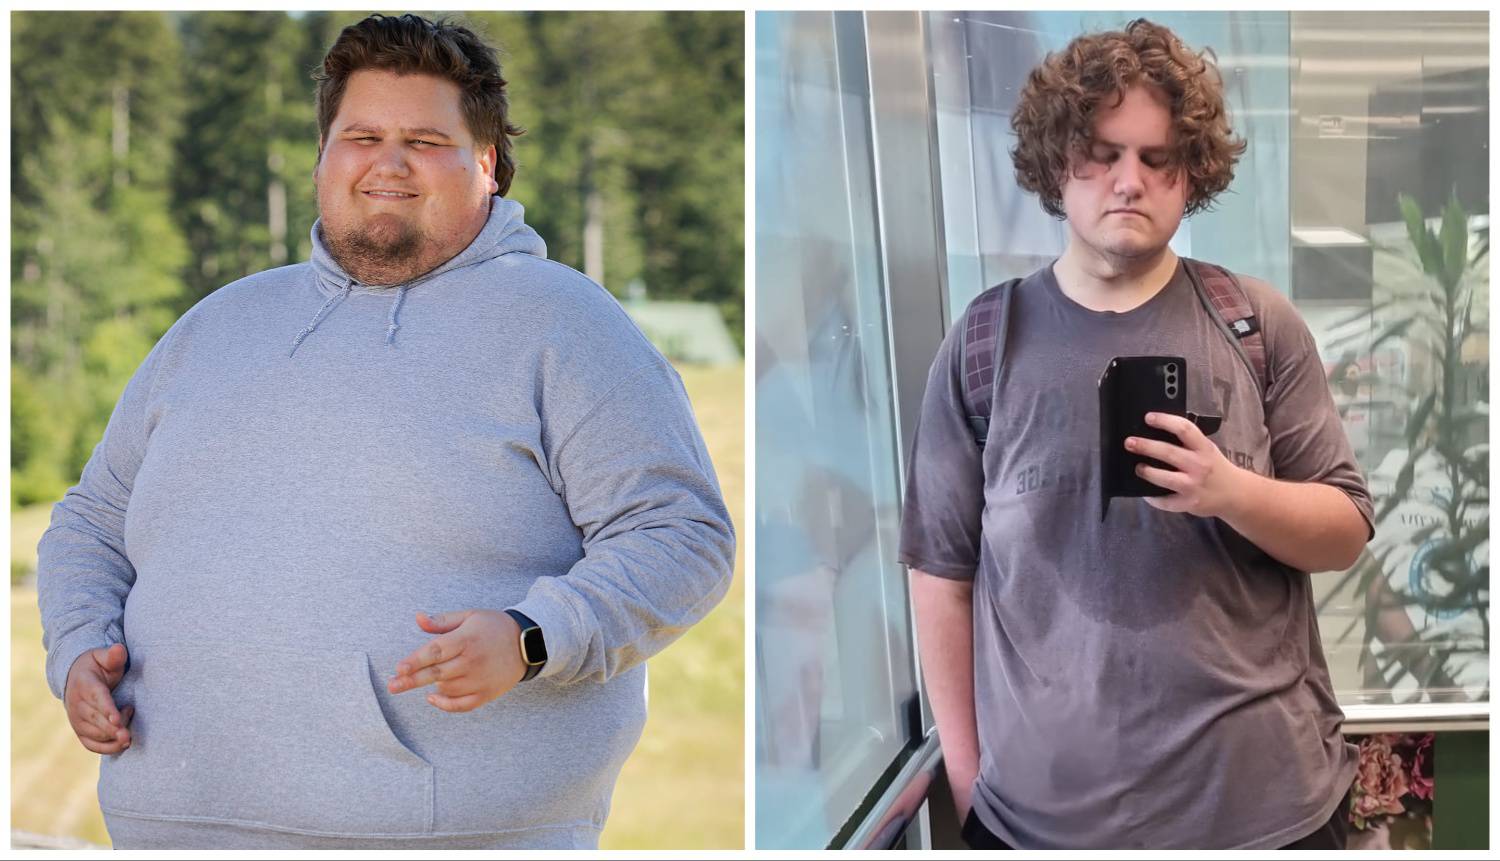 Filip je imao 235 kg, a cilj mu je doći ispod 100 kg: Treniram šest puta tjedno. Sad ne odustajem!